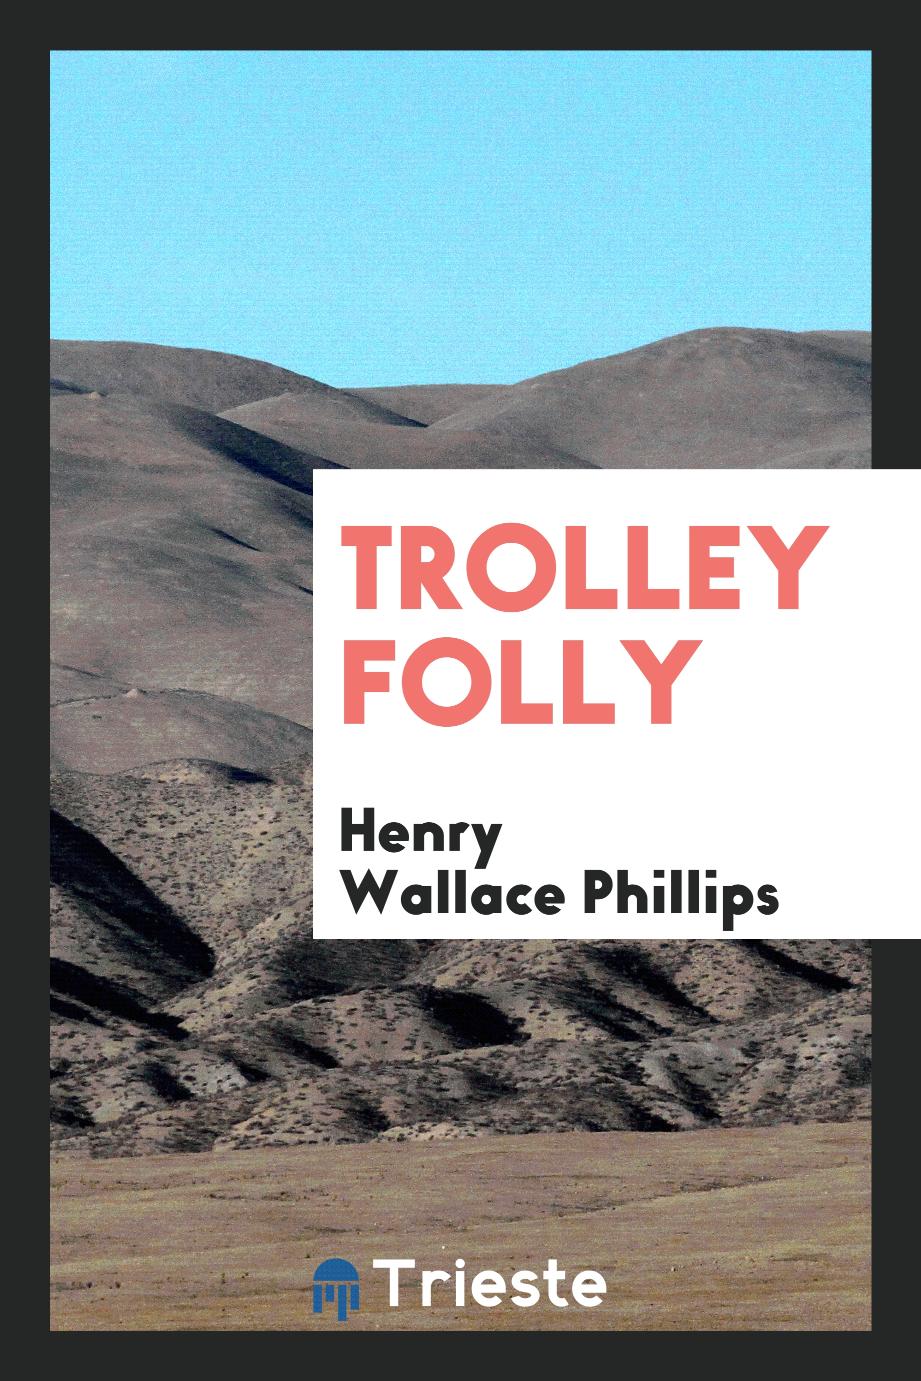 Trolley folly